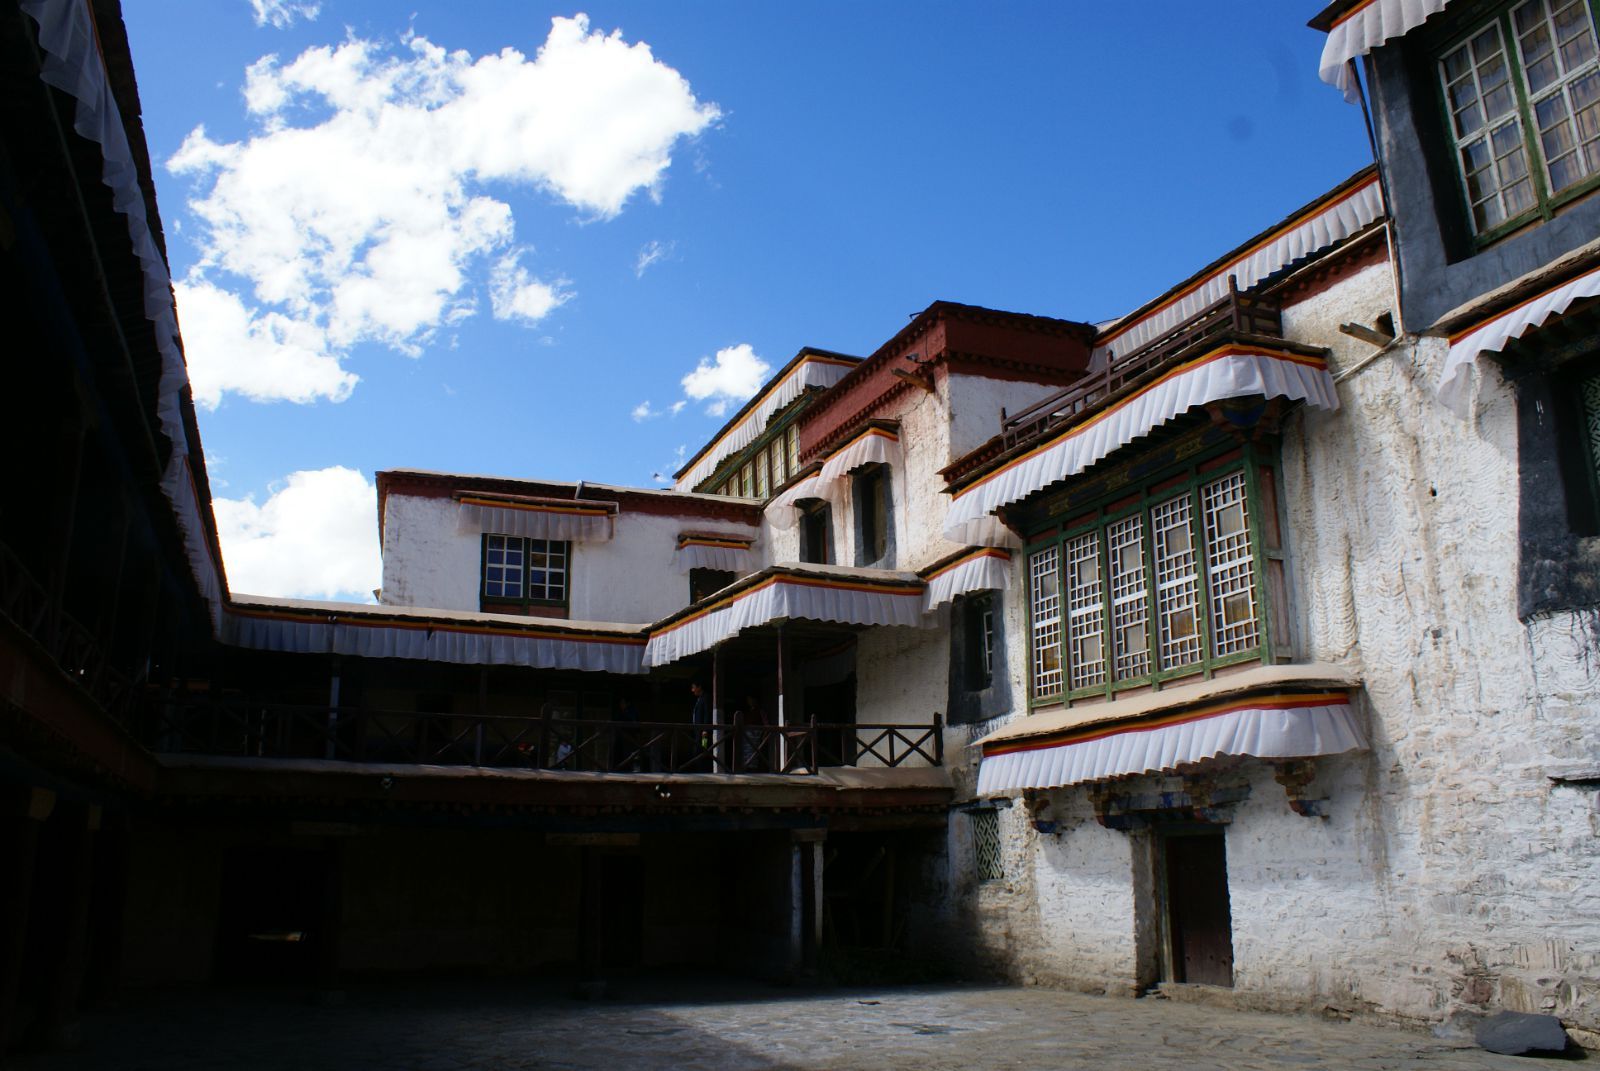 帕拉庄园是当年西藏大贵族帕拉家族的主庄园,全称帕觉拉康